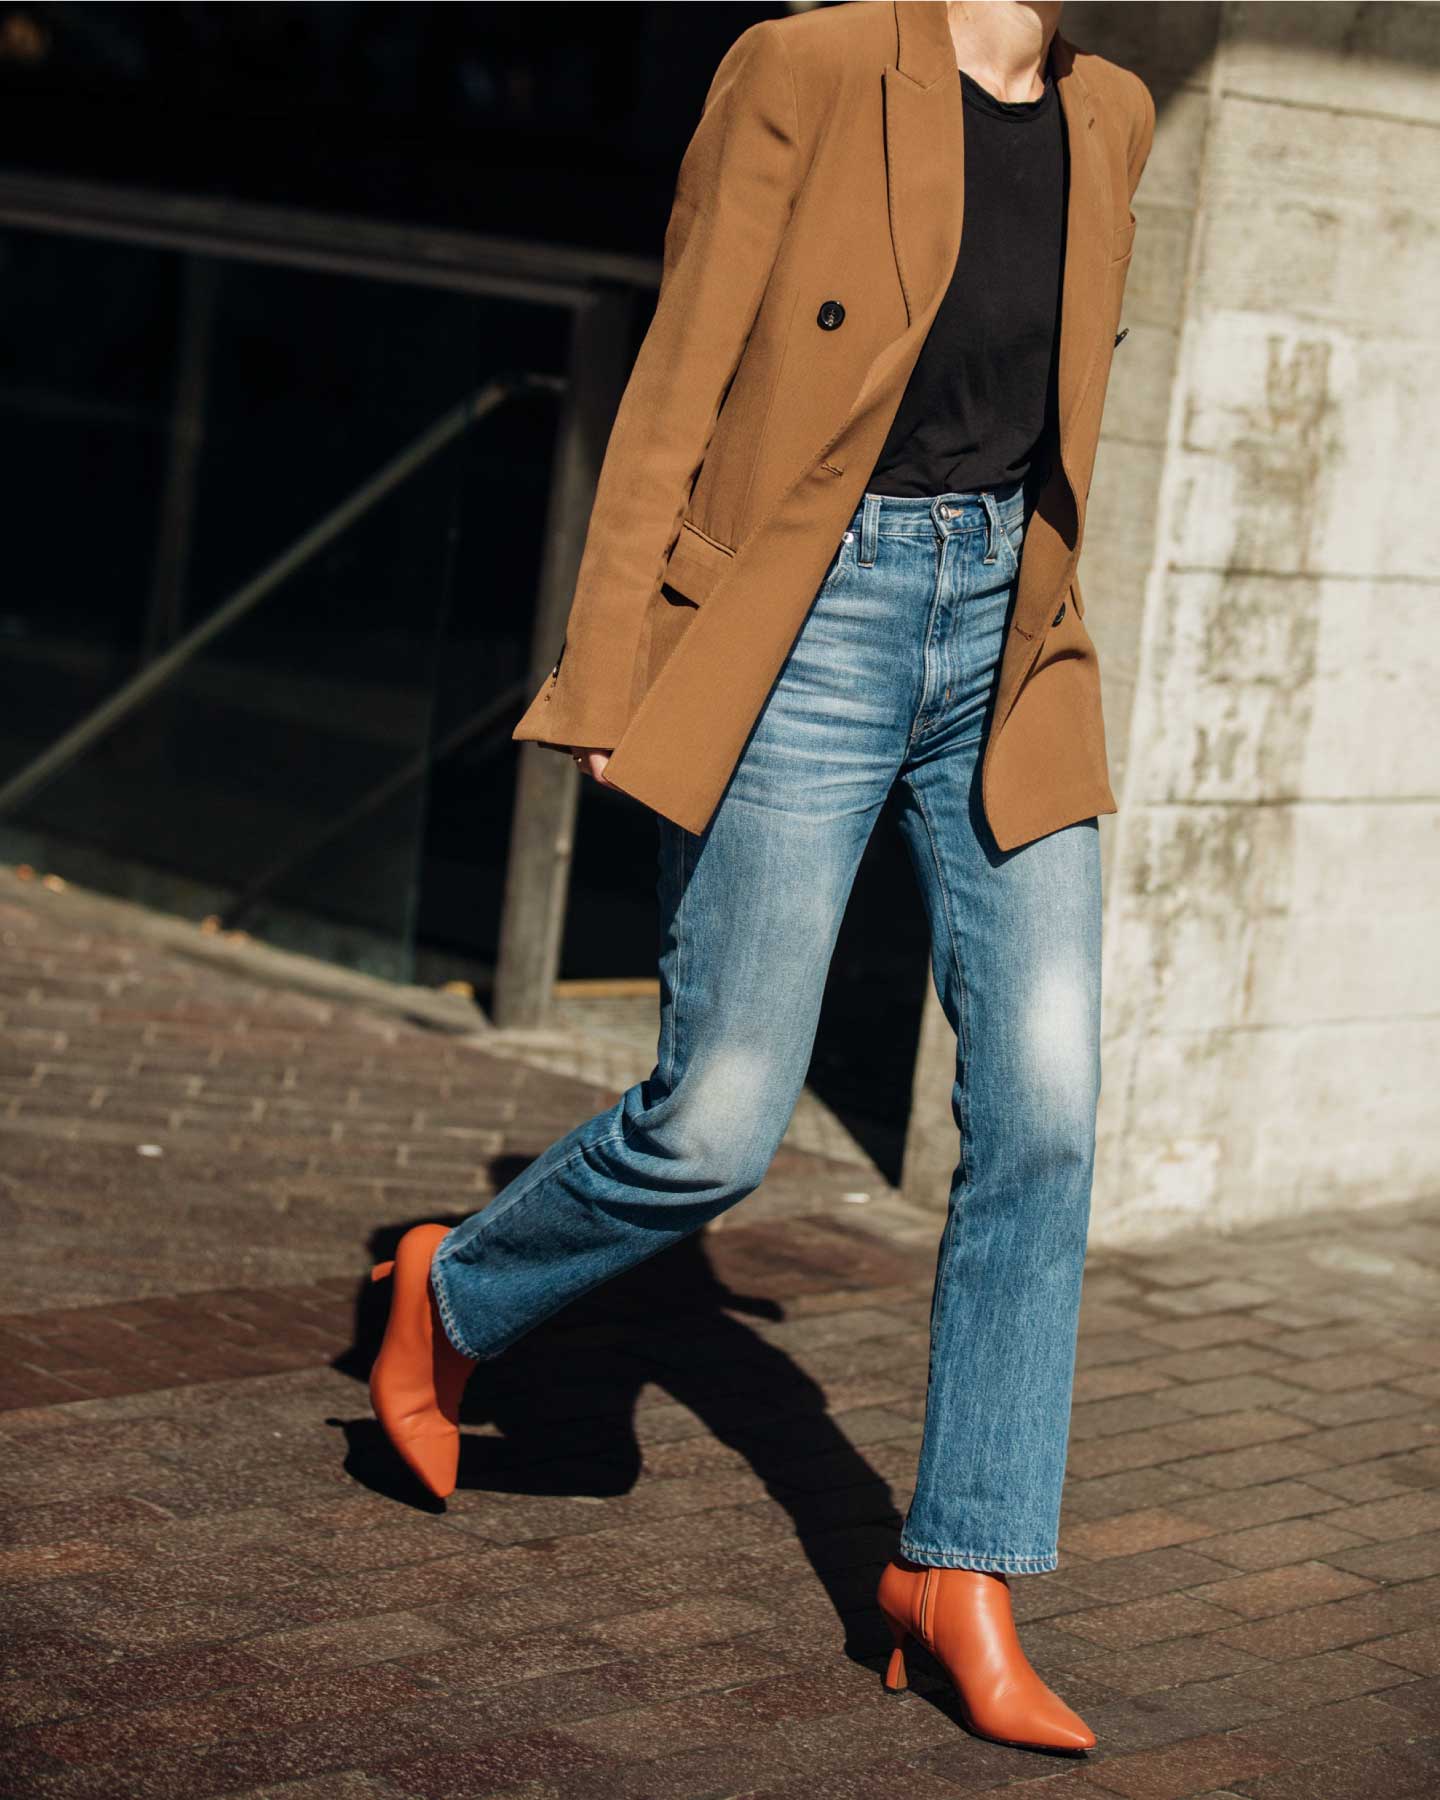 Combinar botines y jeans para temporada con estilo - Lookiero Blog